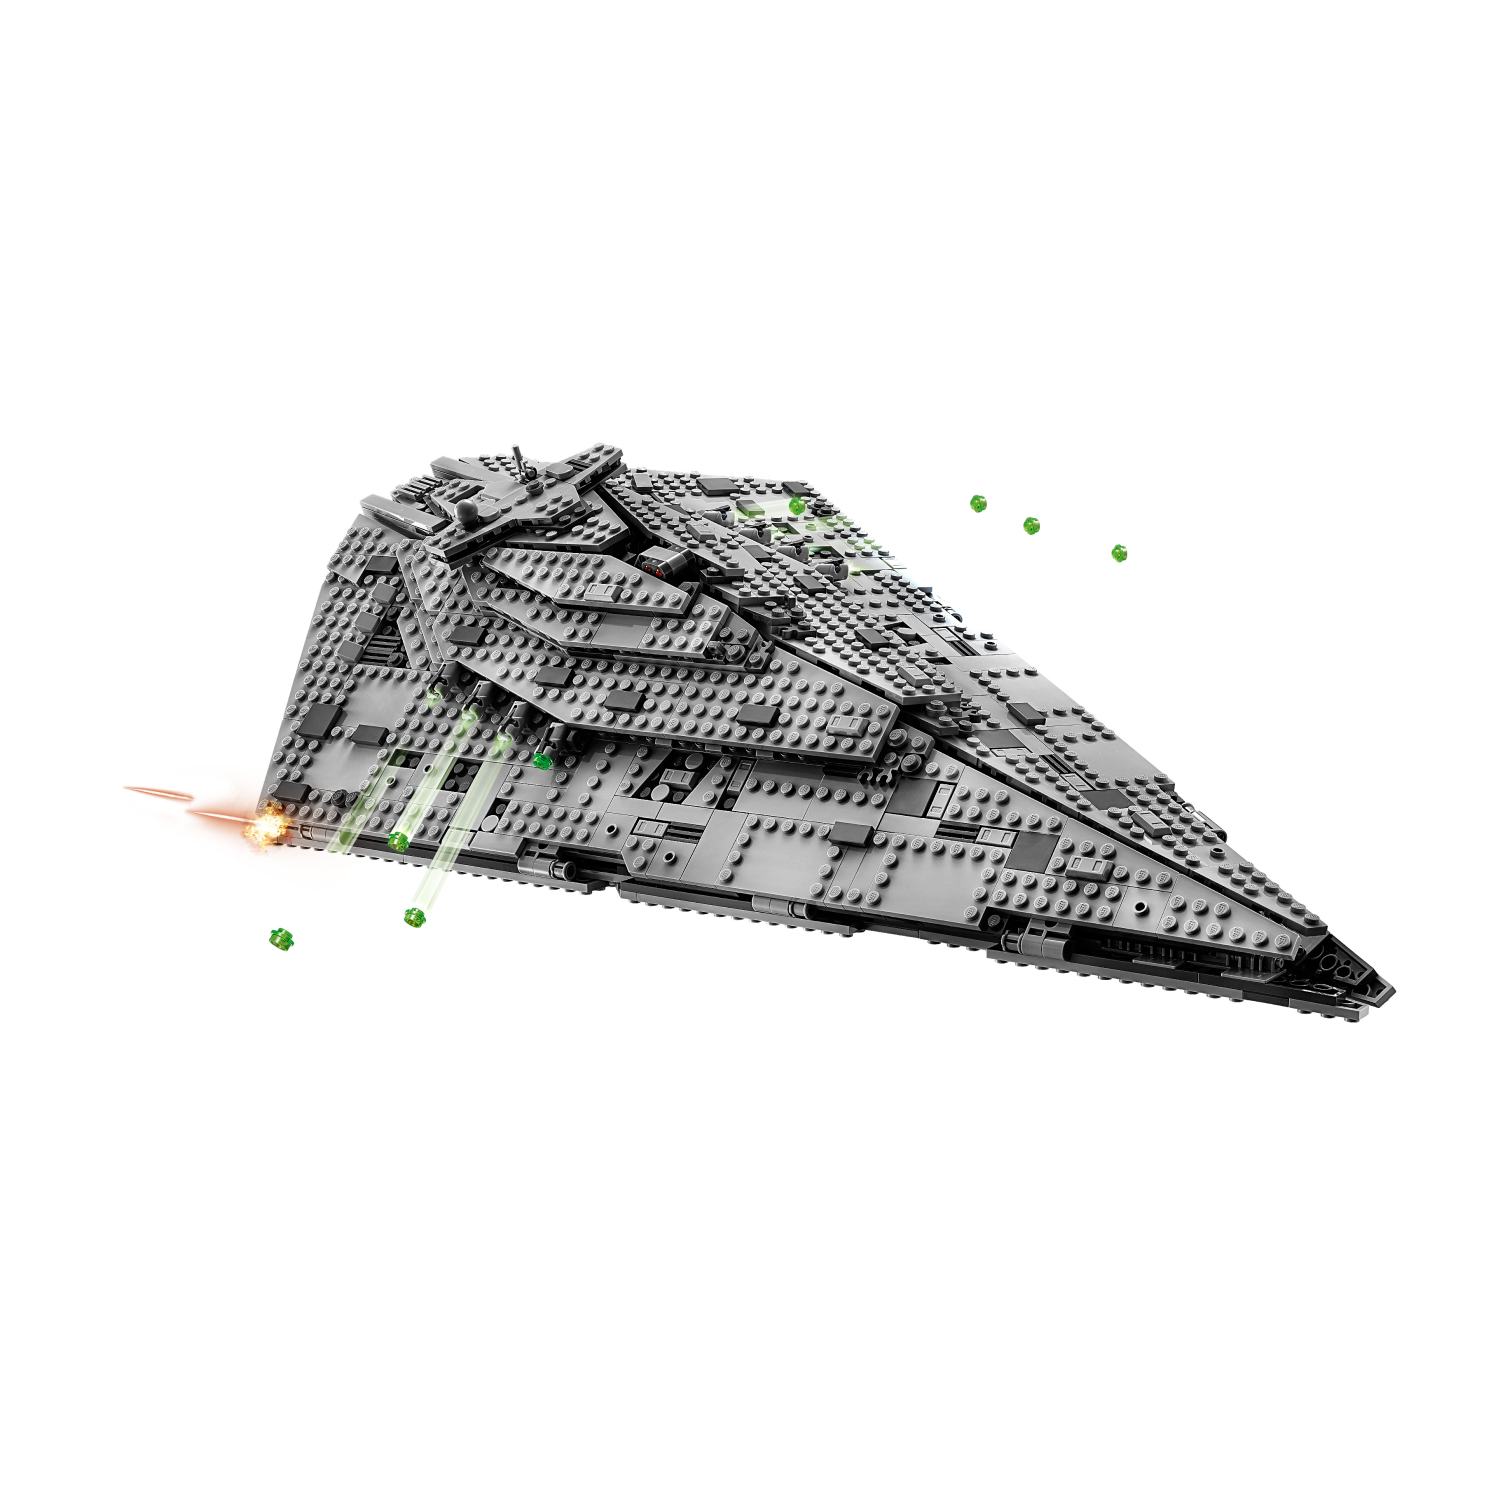 75190 First Order Star Destroyer